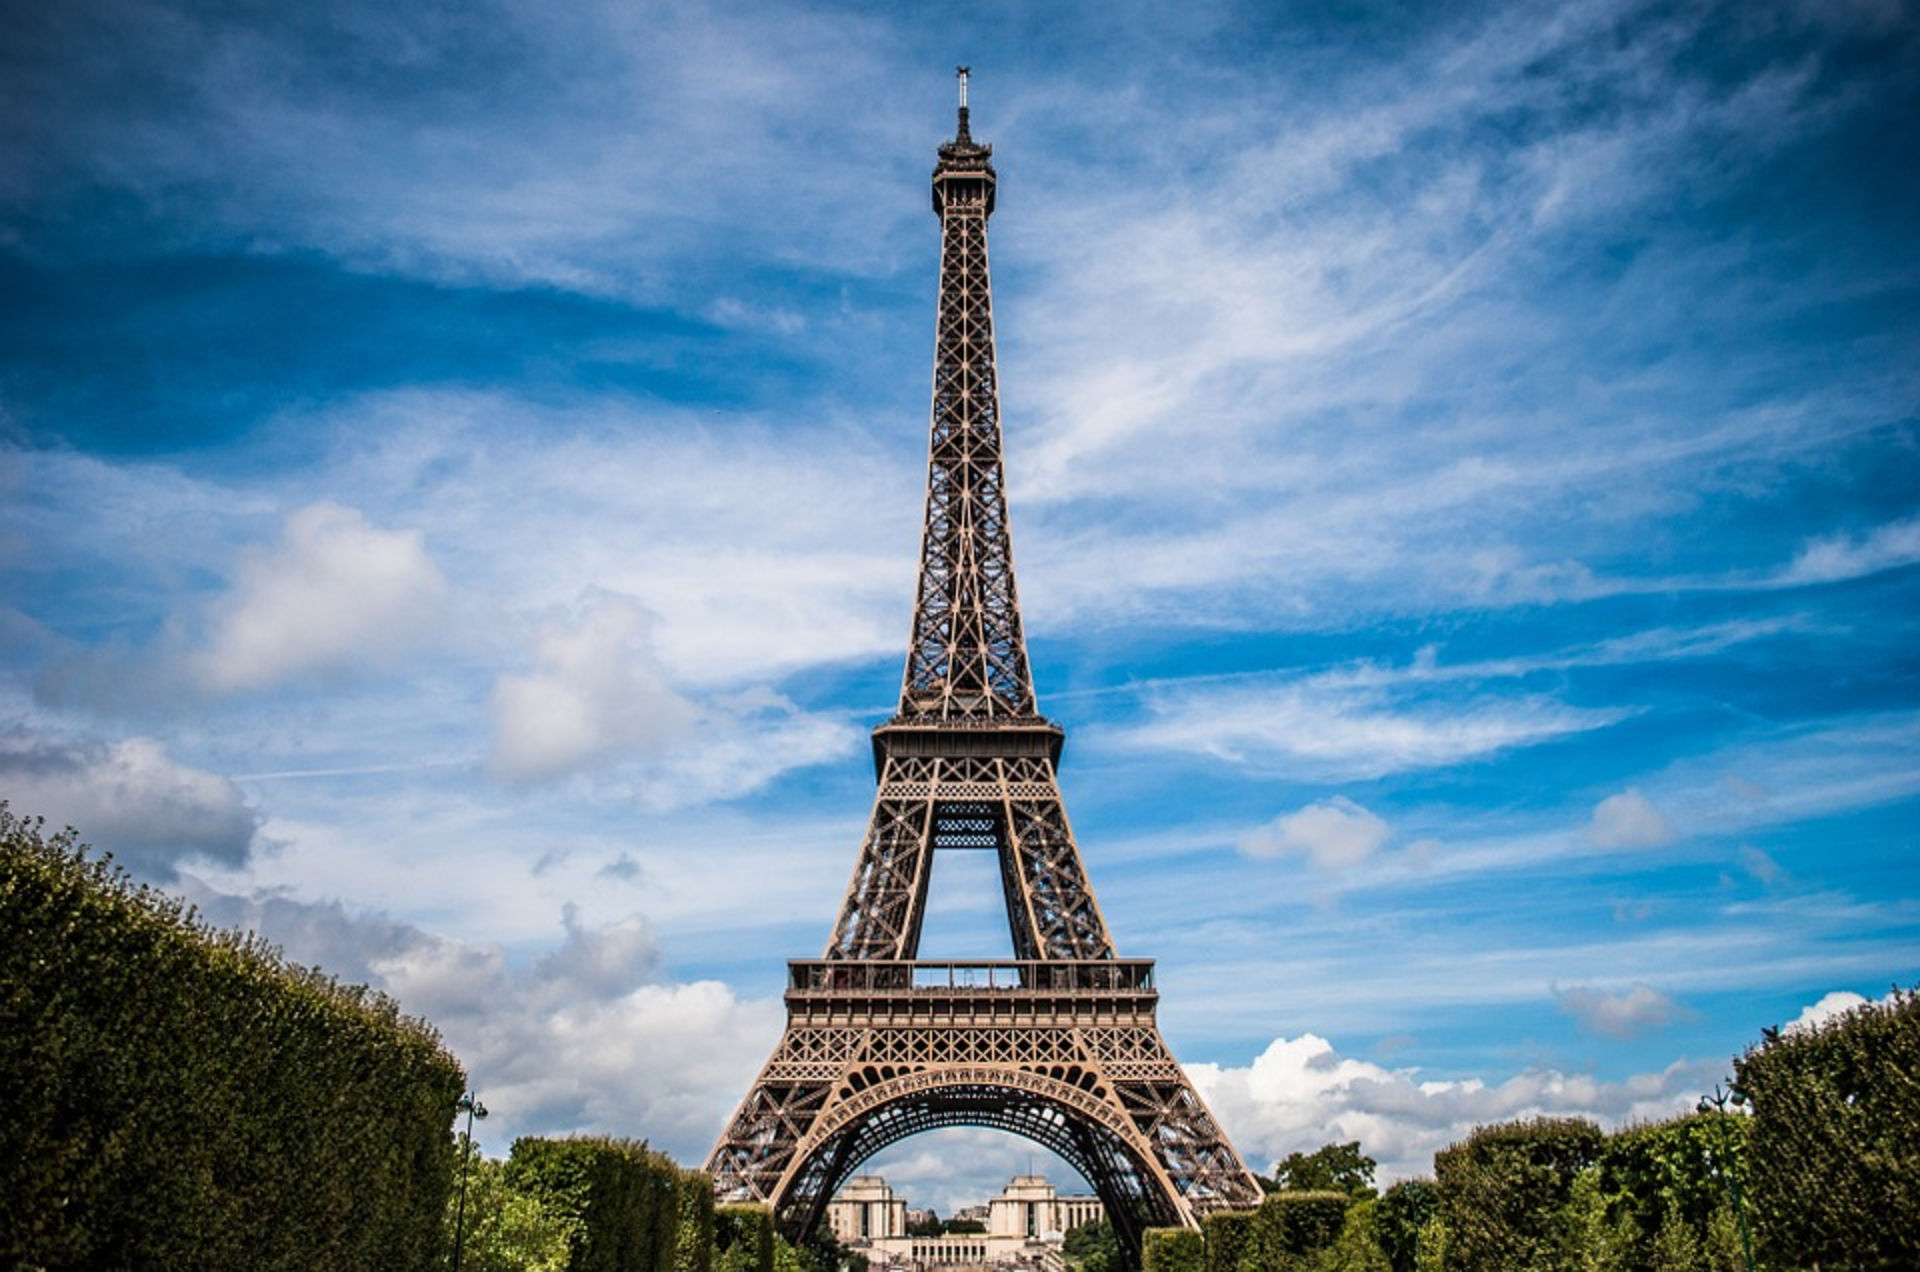 Eiffel Tower is in Paris